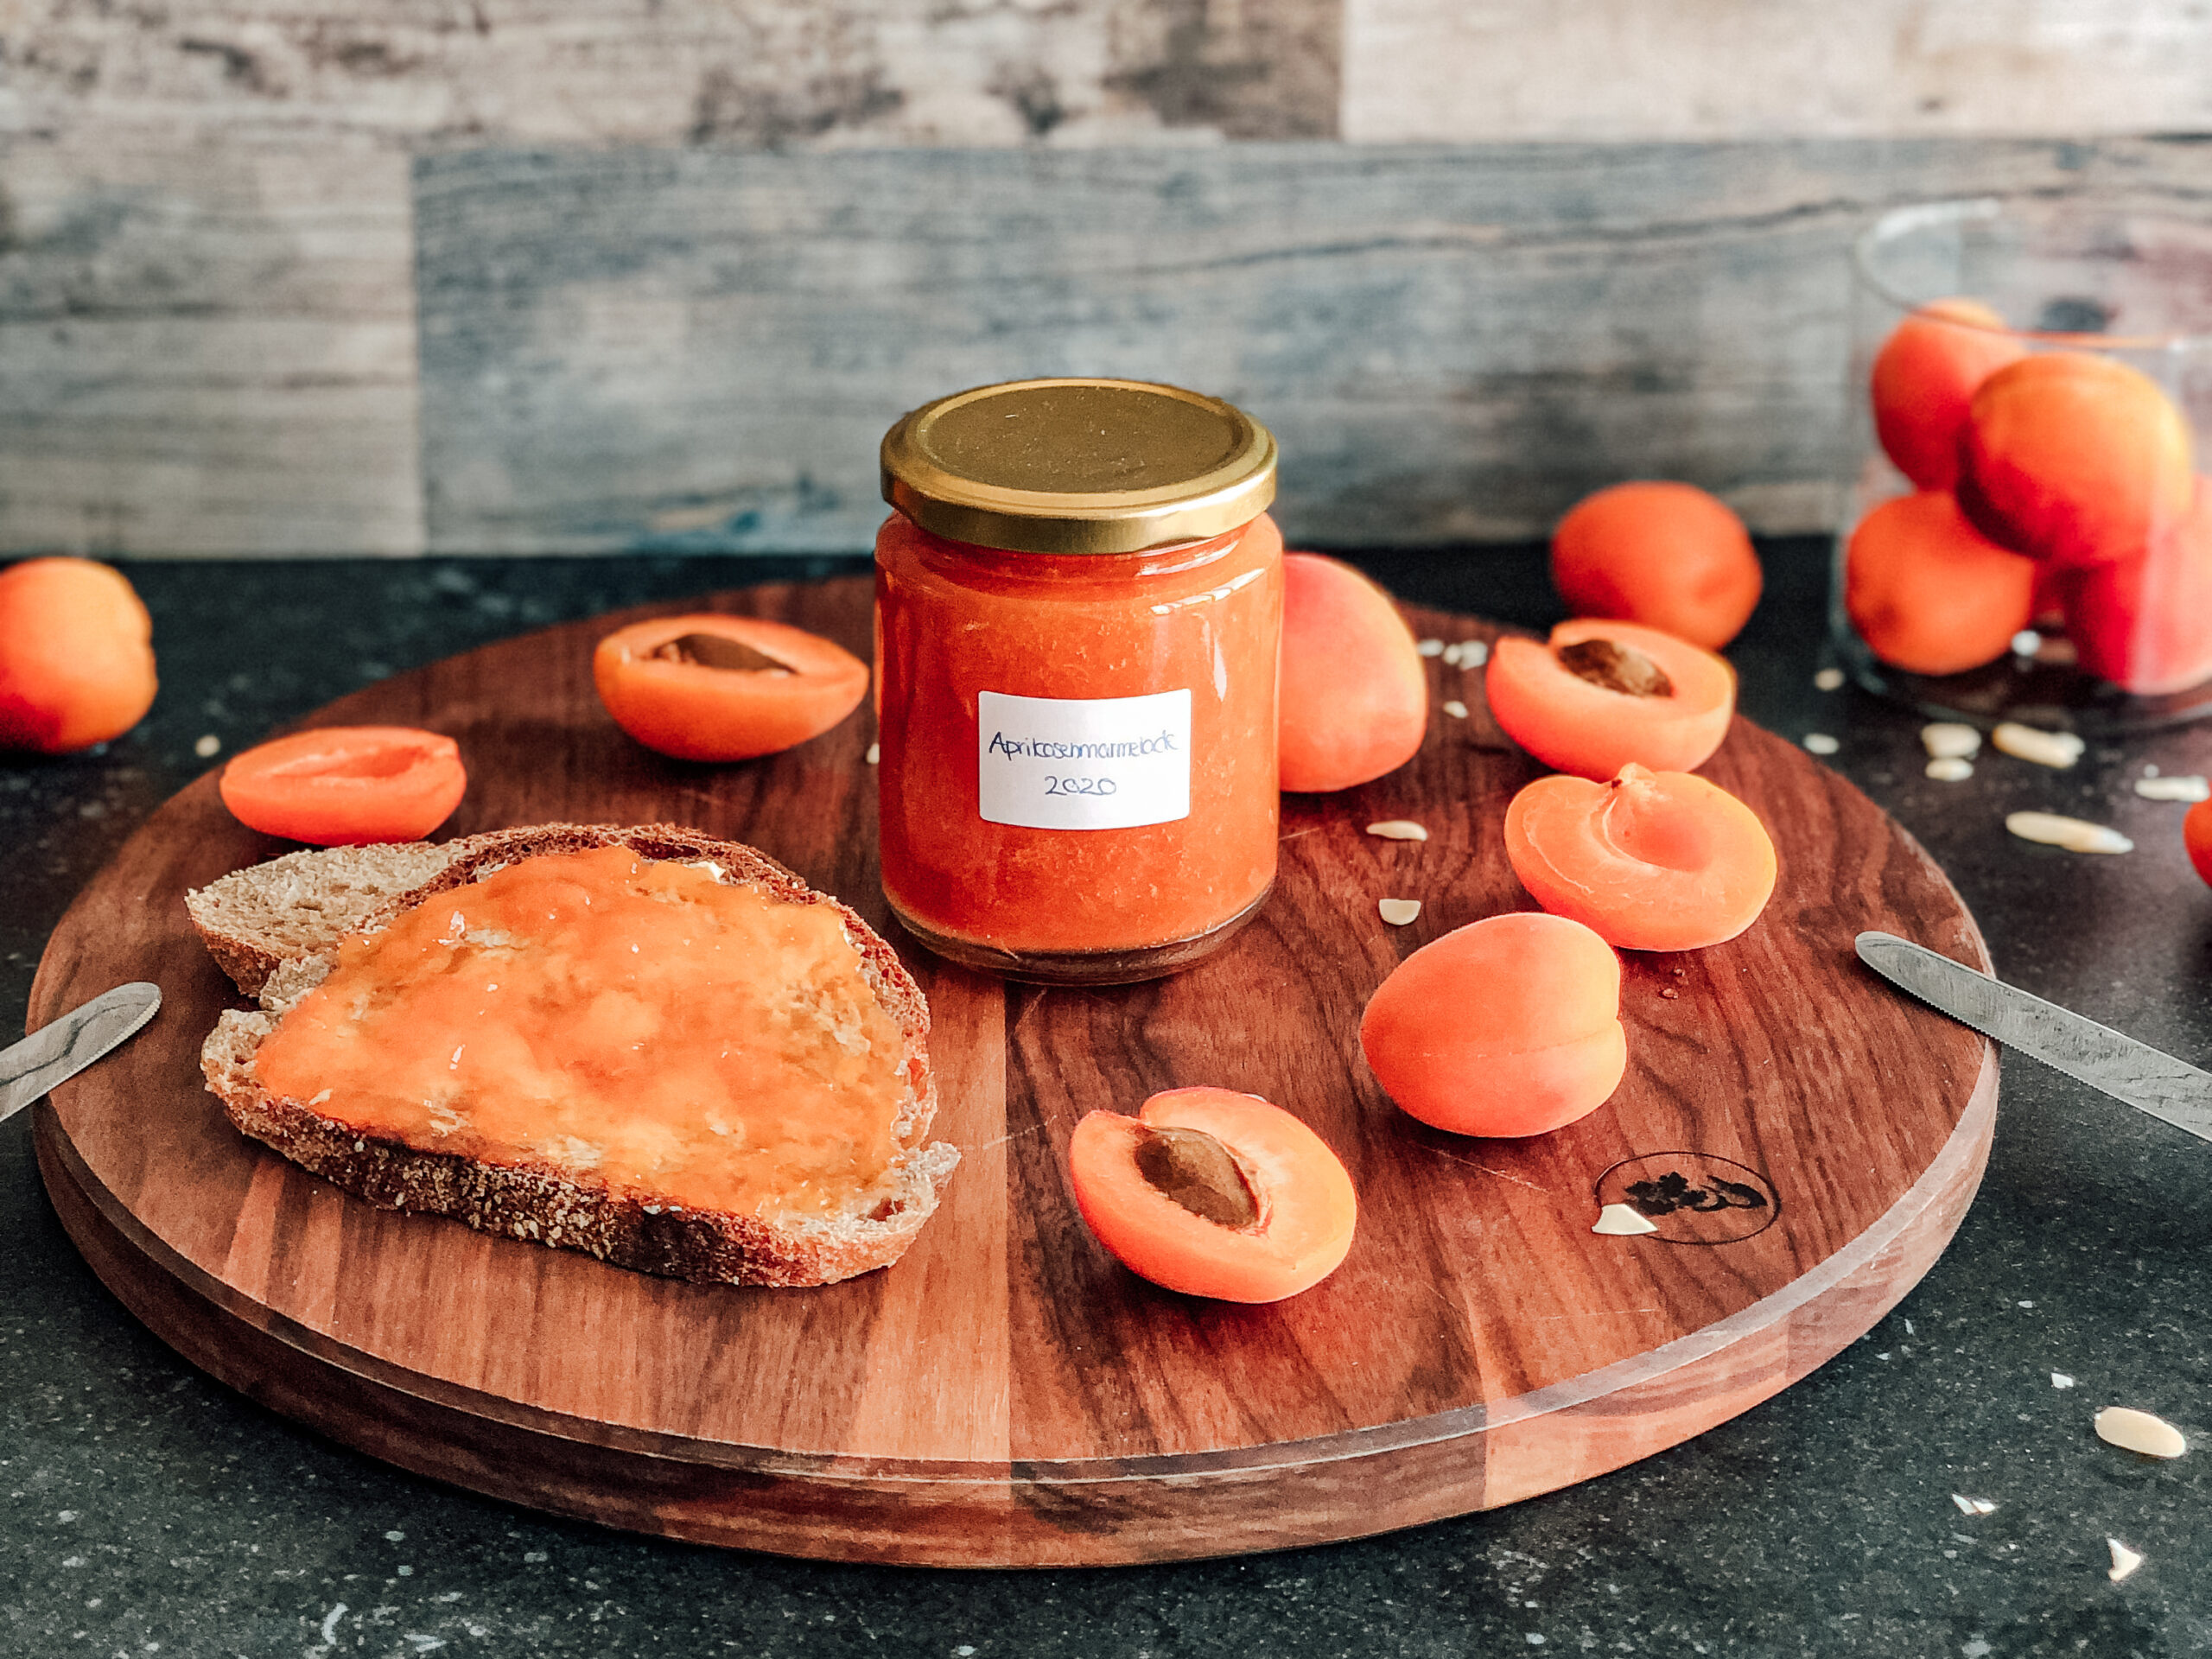 Homemade Apricot Jam